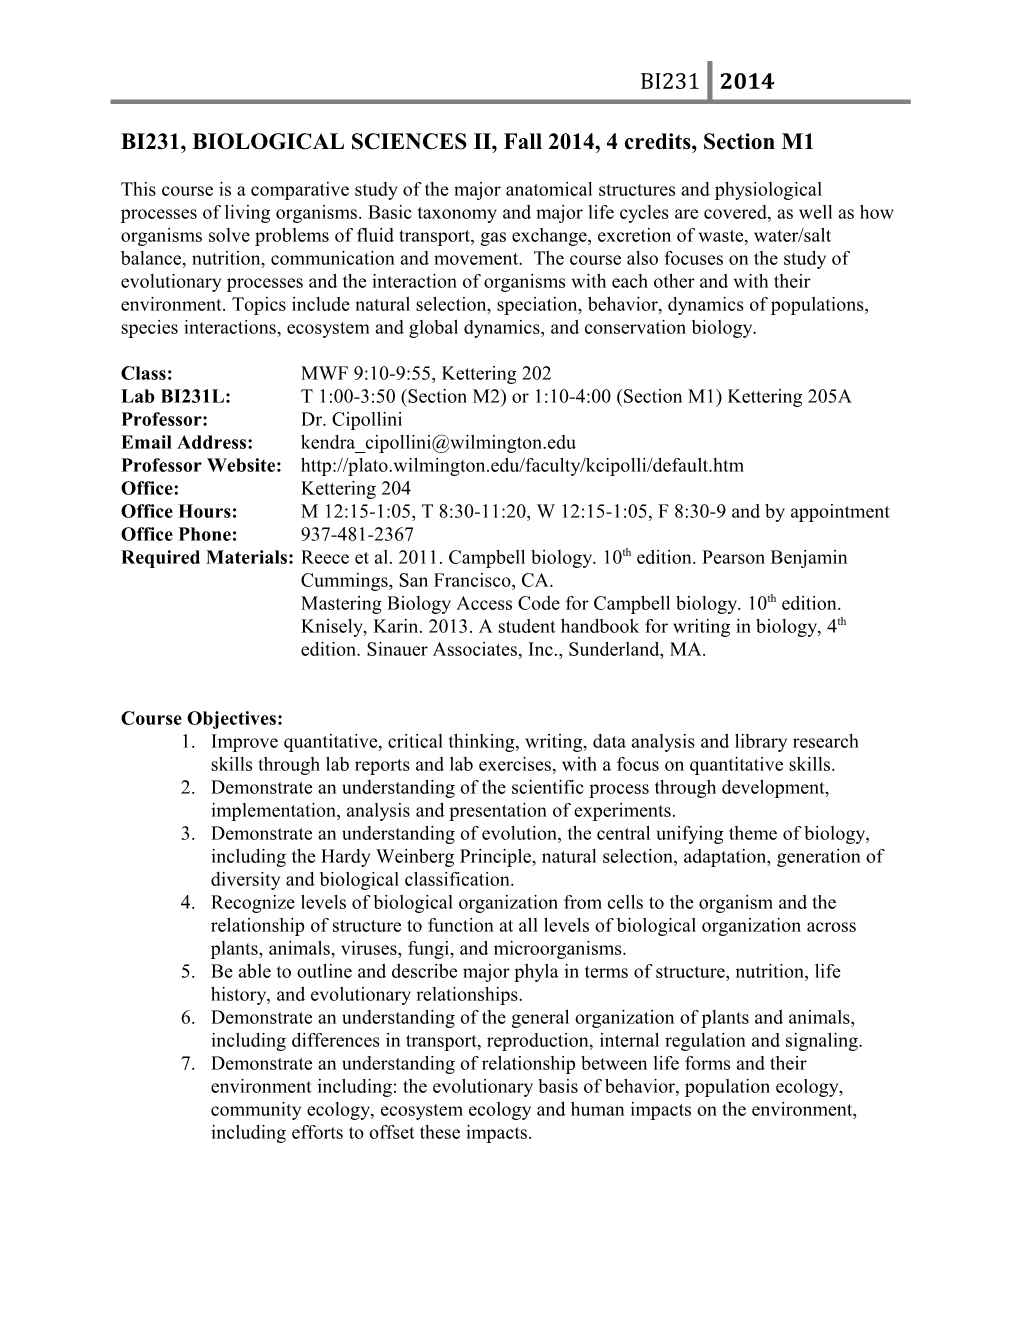 BI231, BIOLOGICAL SCIENCES II, Fall 2014, 4 Credits, Section M1